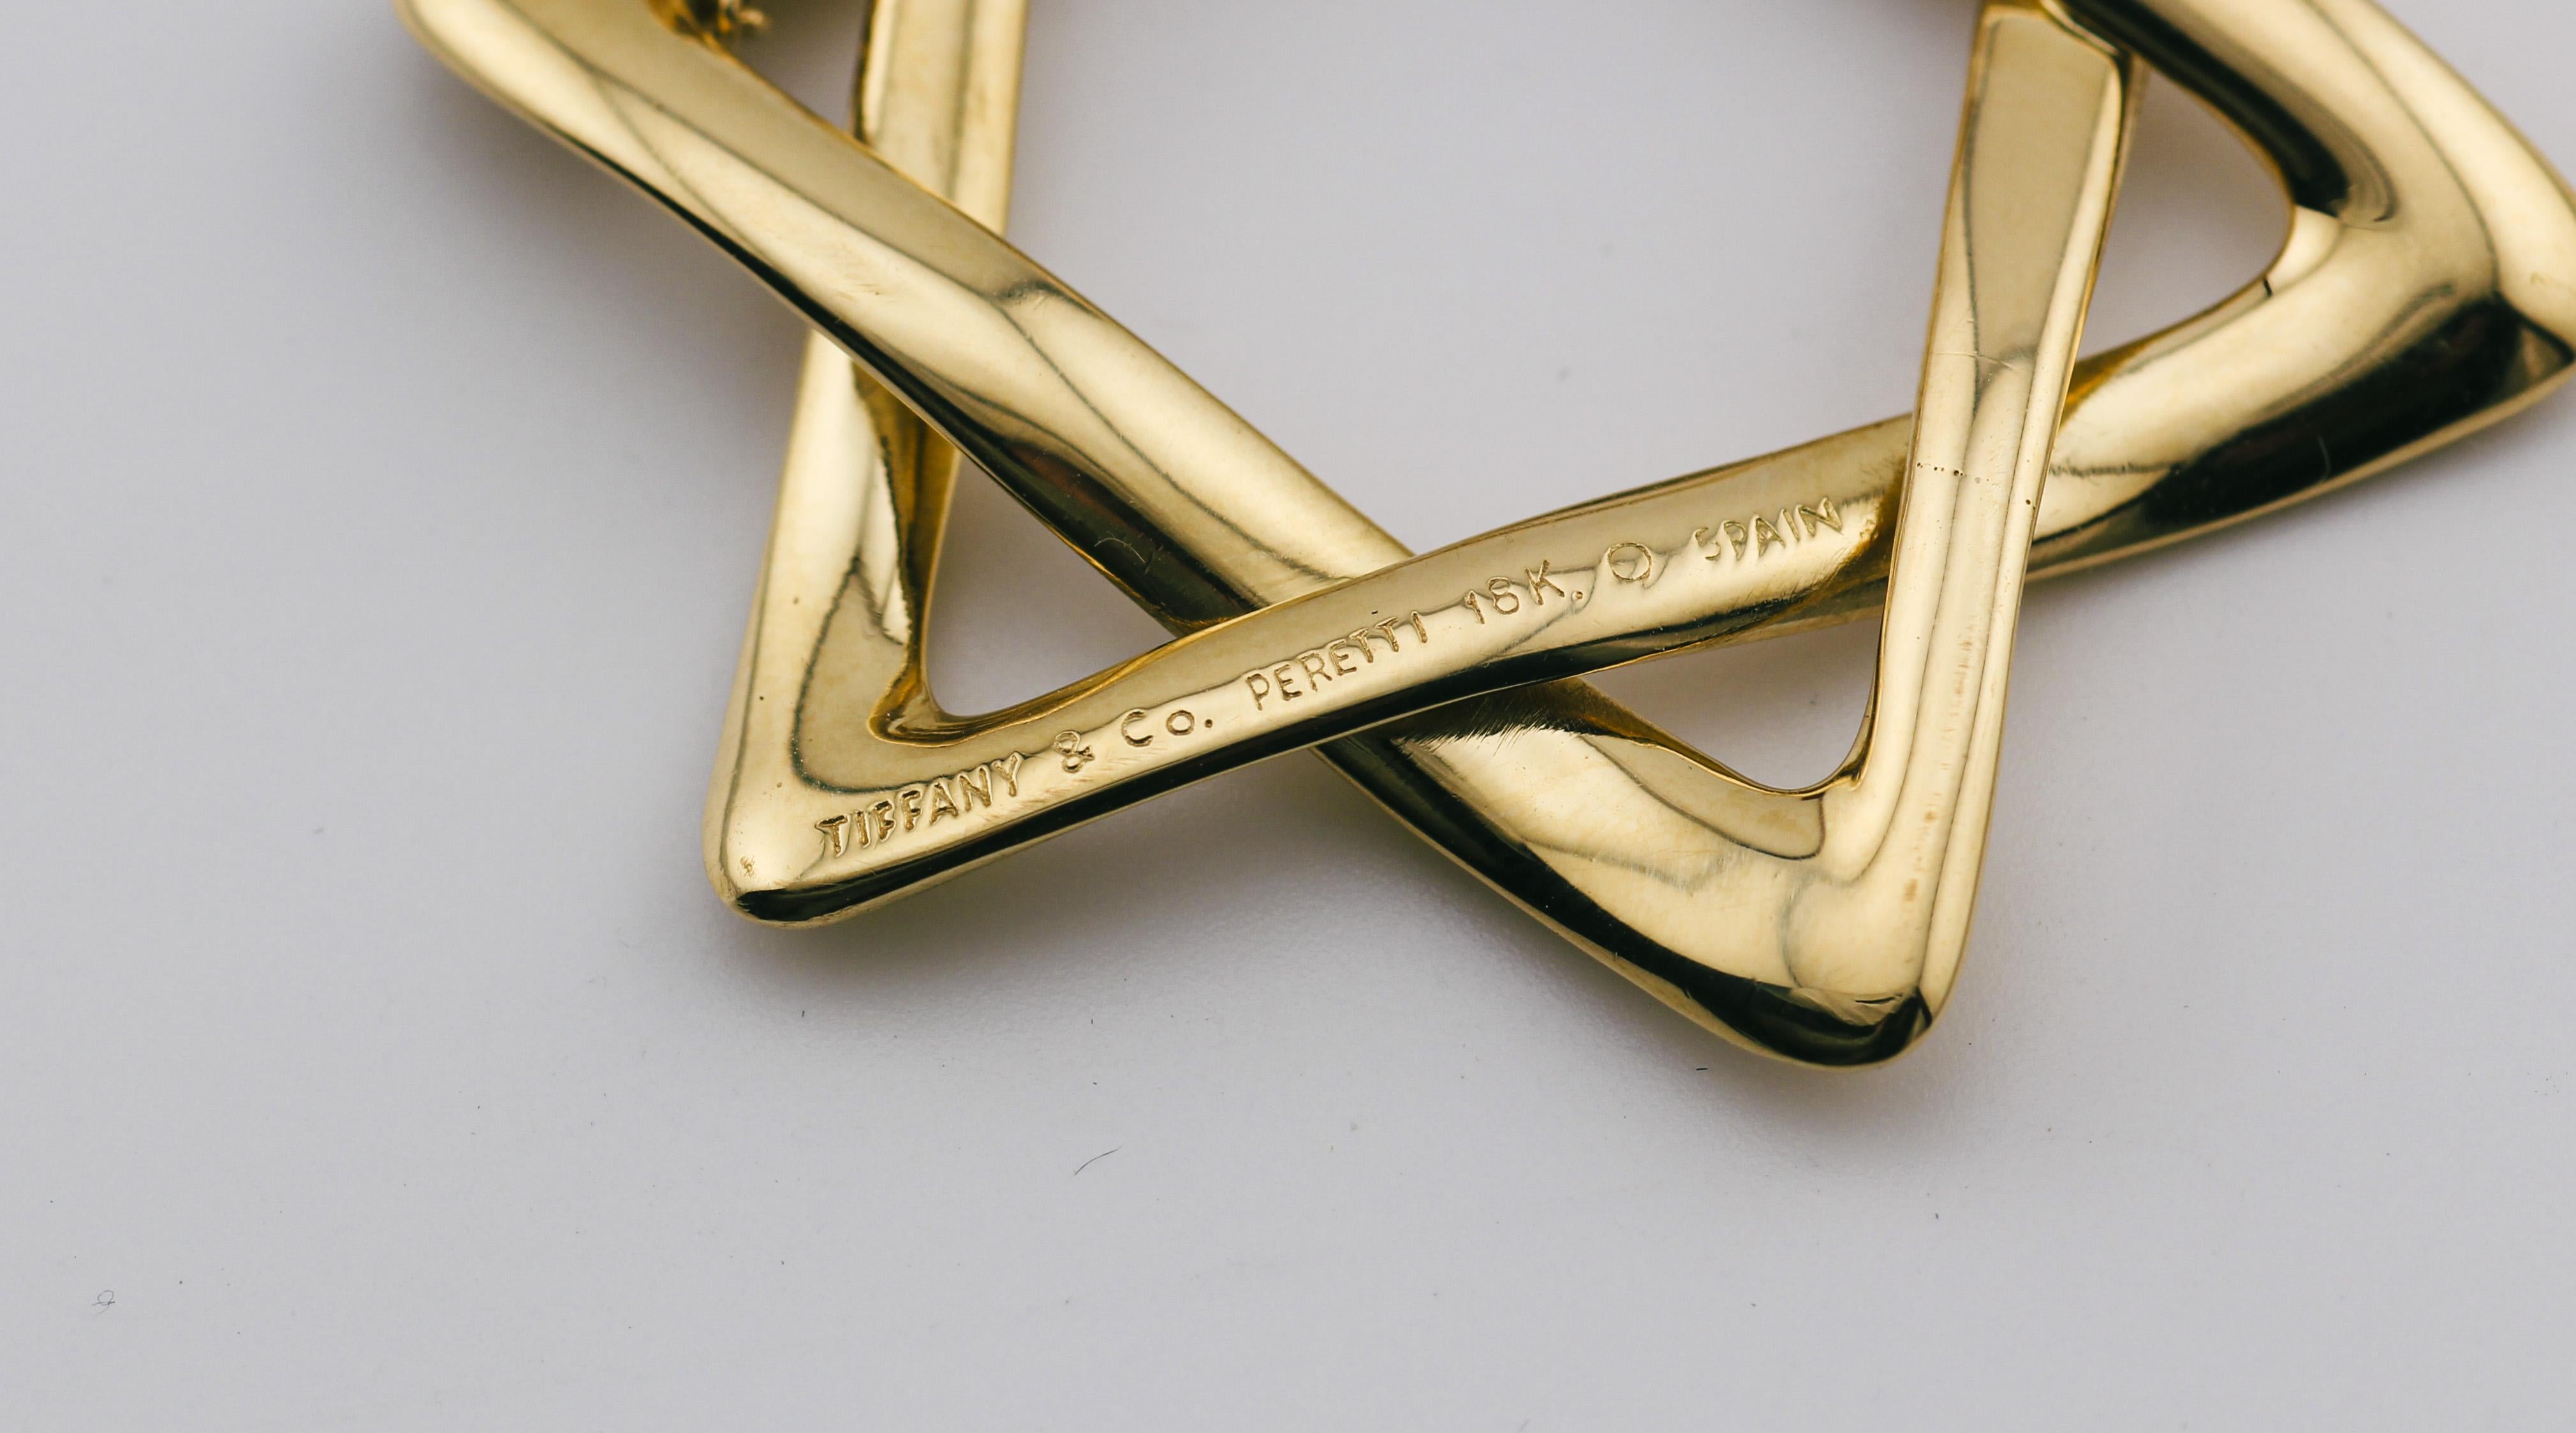 La collection Tiffany & Co. Le collier à pendentif étoile de David de 40 mm en or jaune 18K d'Elsa Peretti est une expression rayonnante de foi et de style. Réalisé par la célèbre designer Elsa Peretti, ce collier à pendentif est un chef-d'œuvre